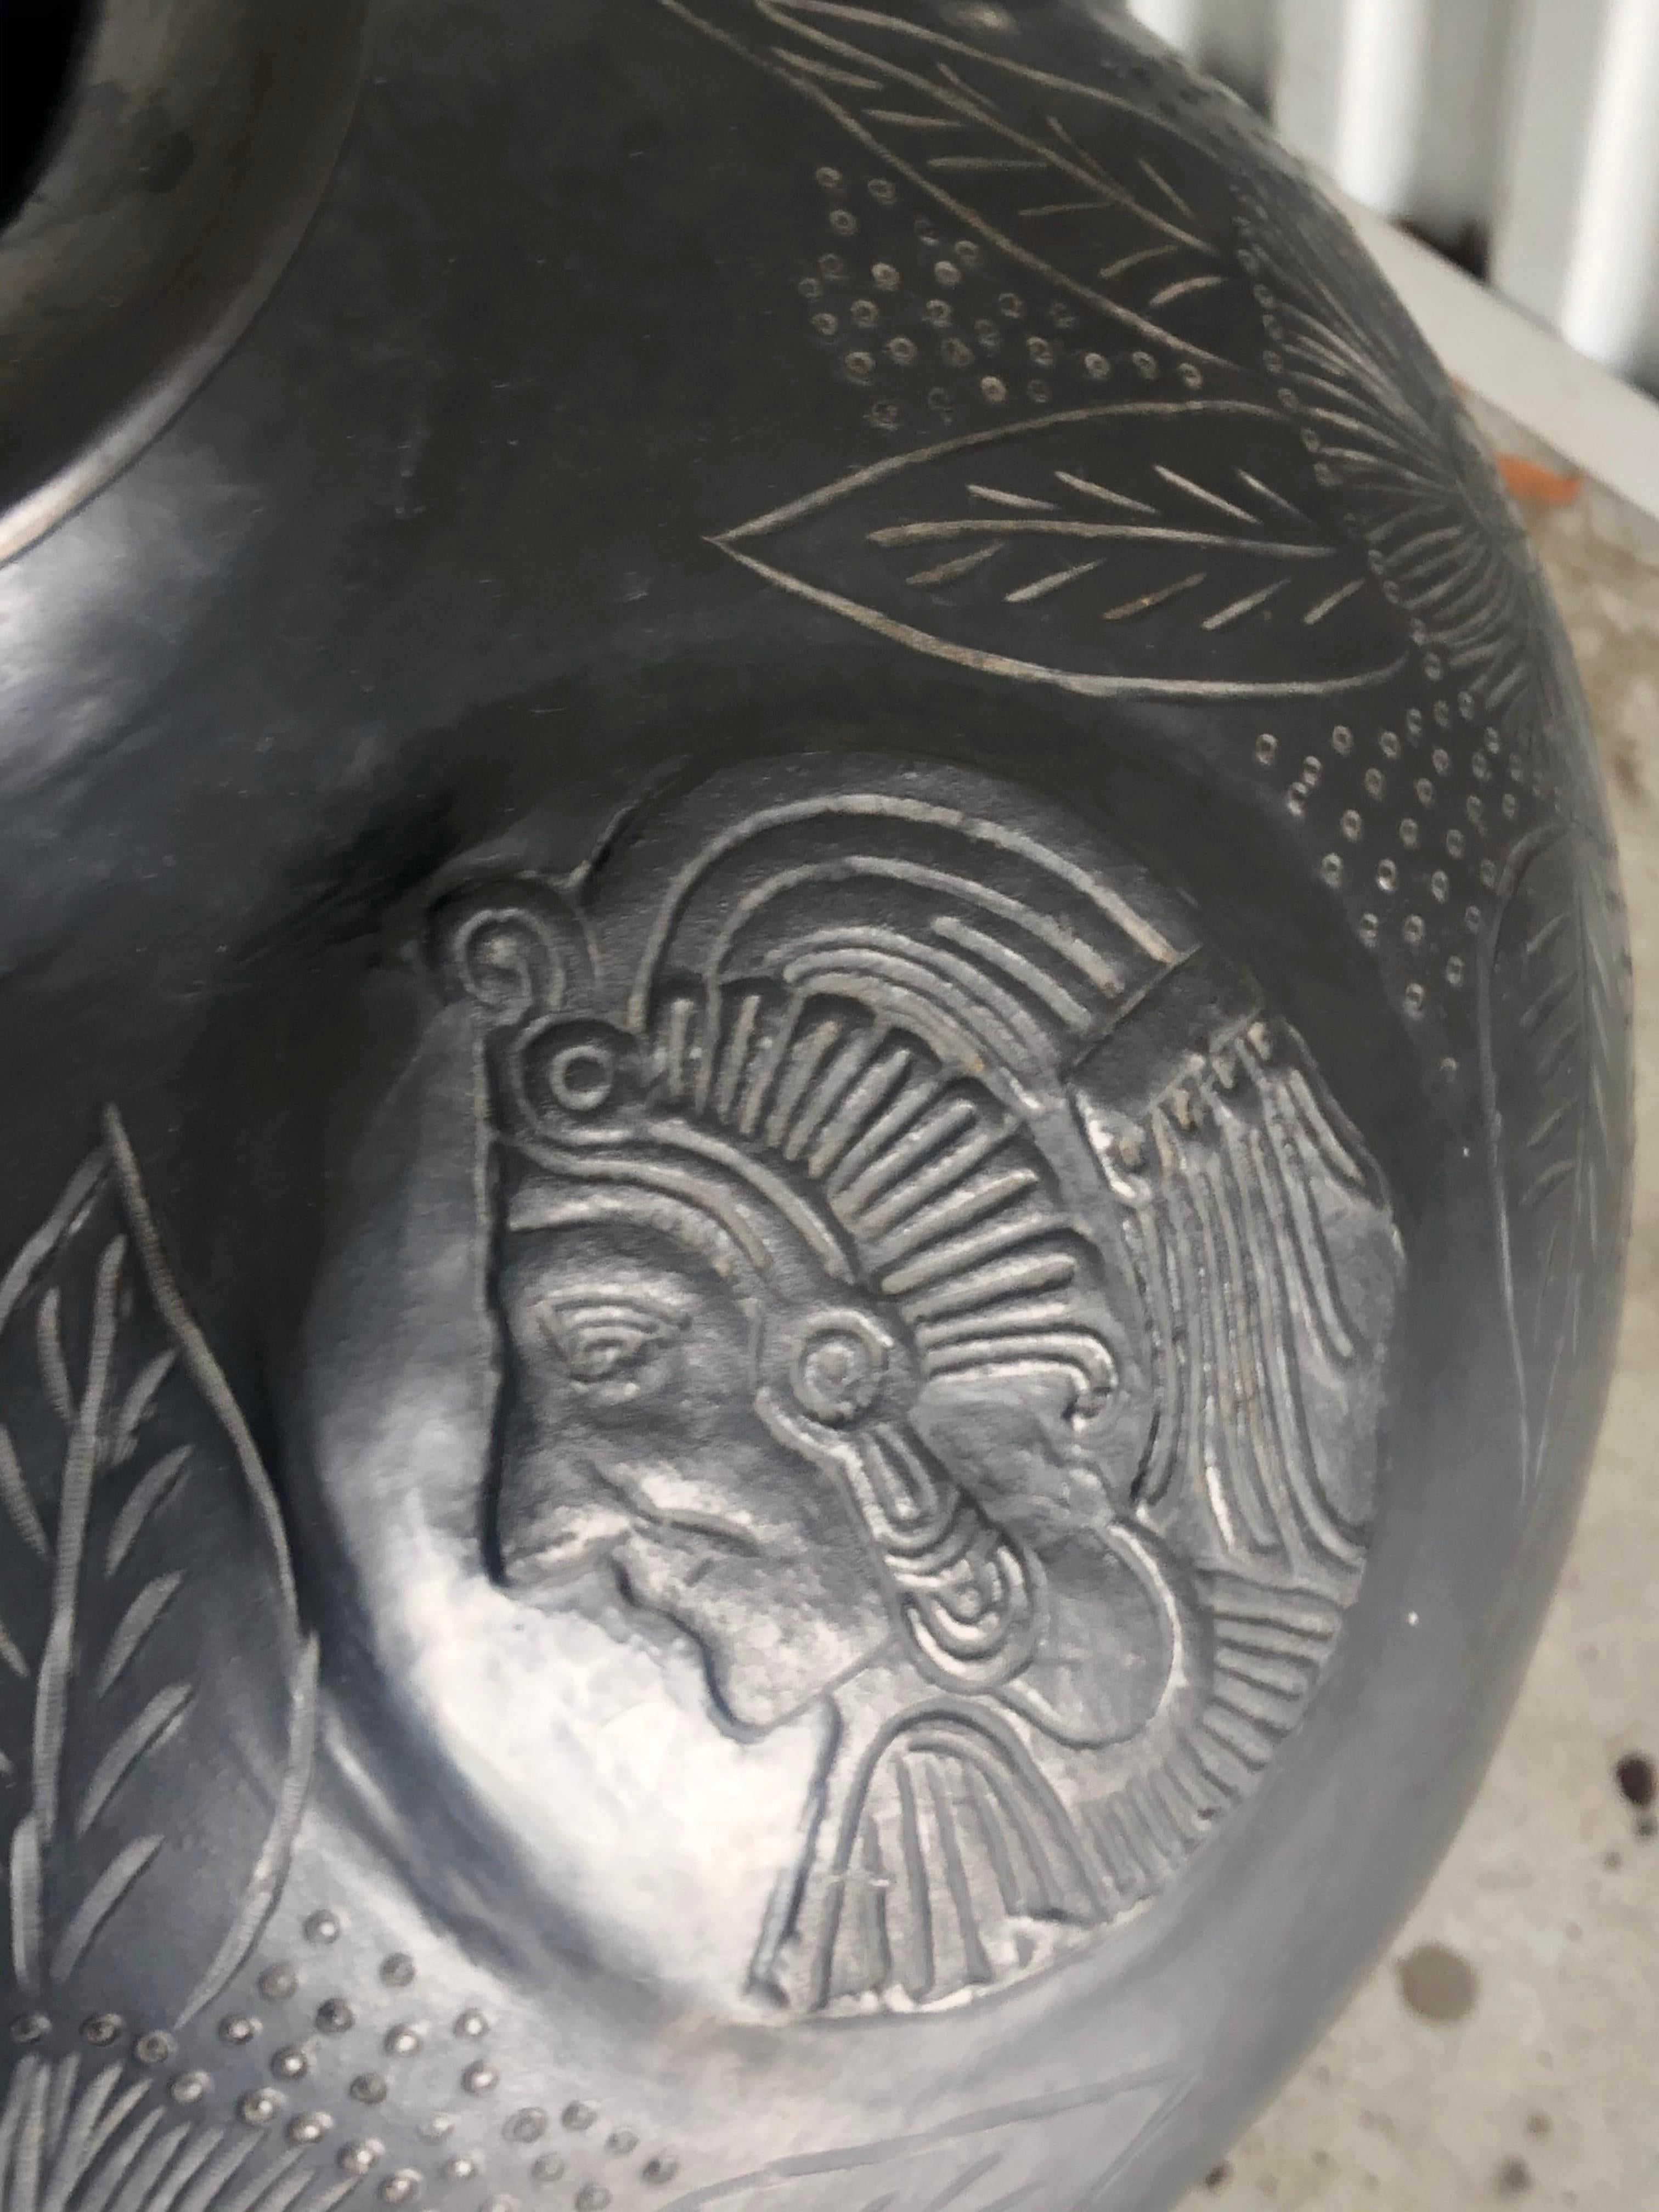 Erstaunliche schwarze Keramikurne. In der Art der Pueblo-Keramik hat das Stück den berühmten Glanz. Verziert mit handgeschnitzten Indianerköpfen und großen Blumen und Blättern. Sitzt in einem schmiedeeisernen Ring. Erworben aus einem